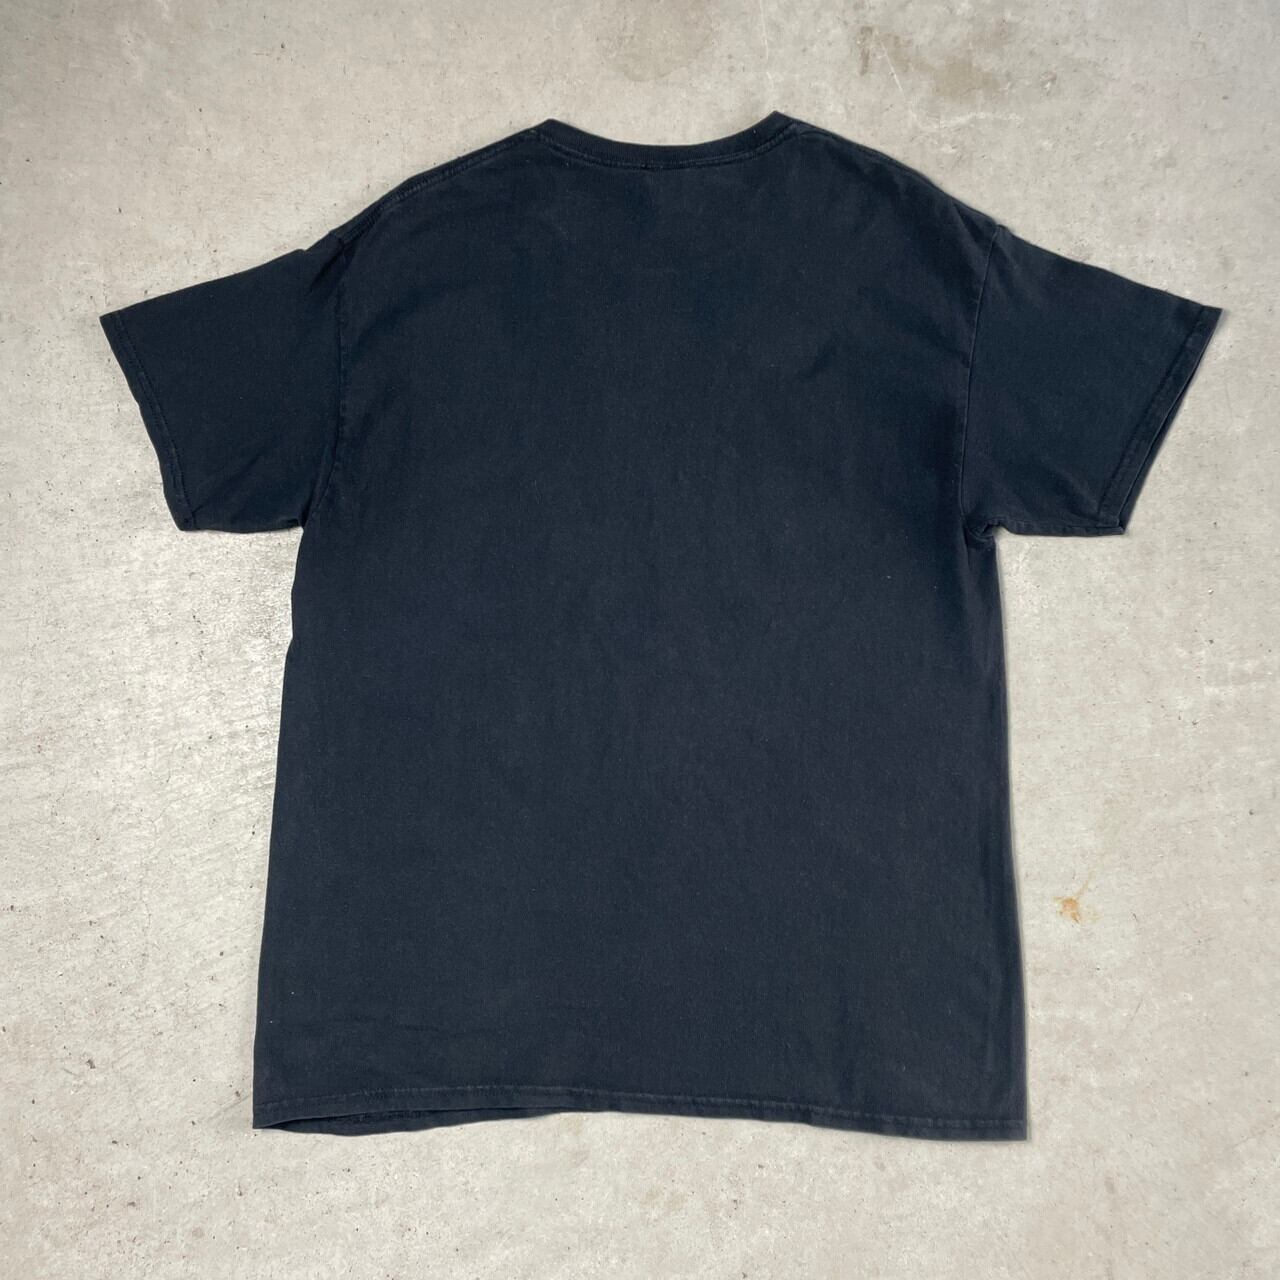 ディズニー ライオンキング Tシャツ 黒 ラナ USA輸入 y4606e